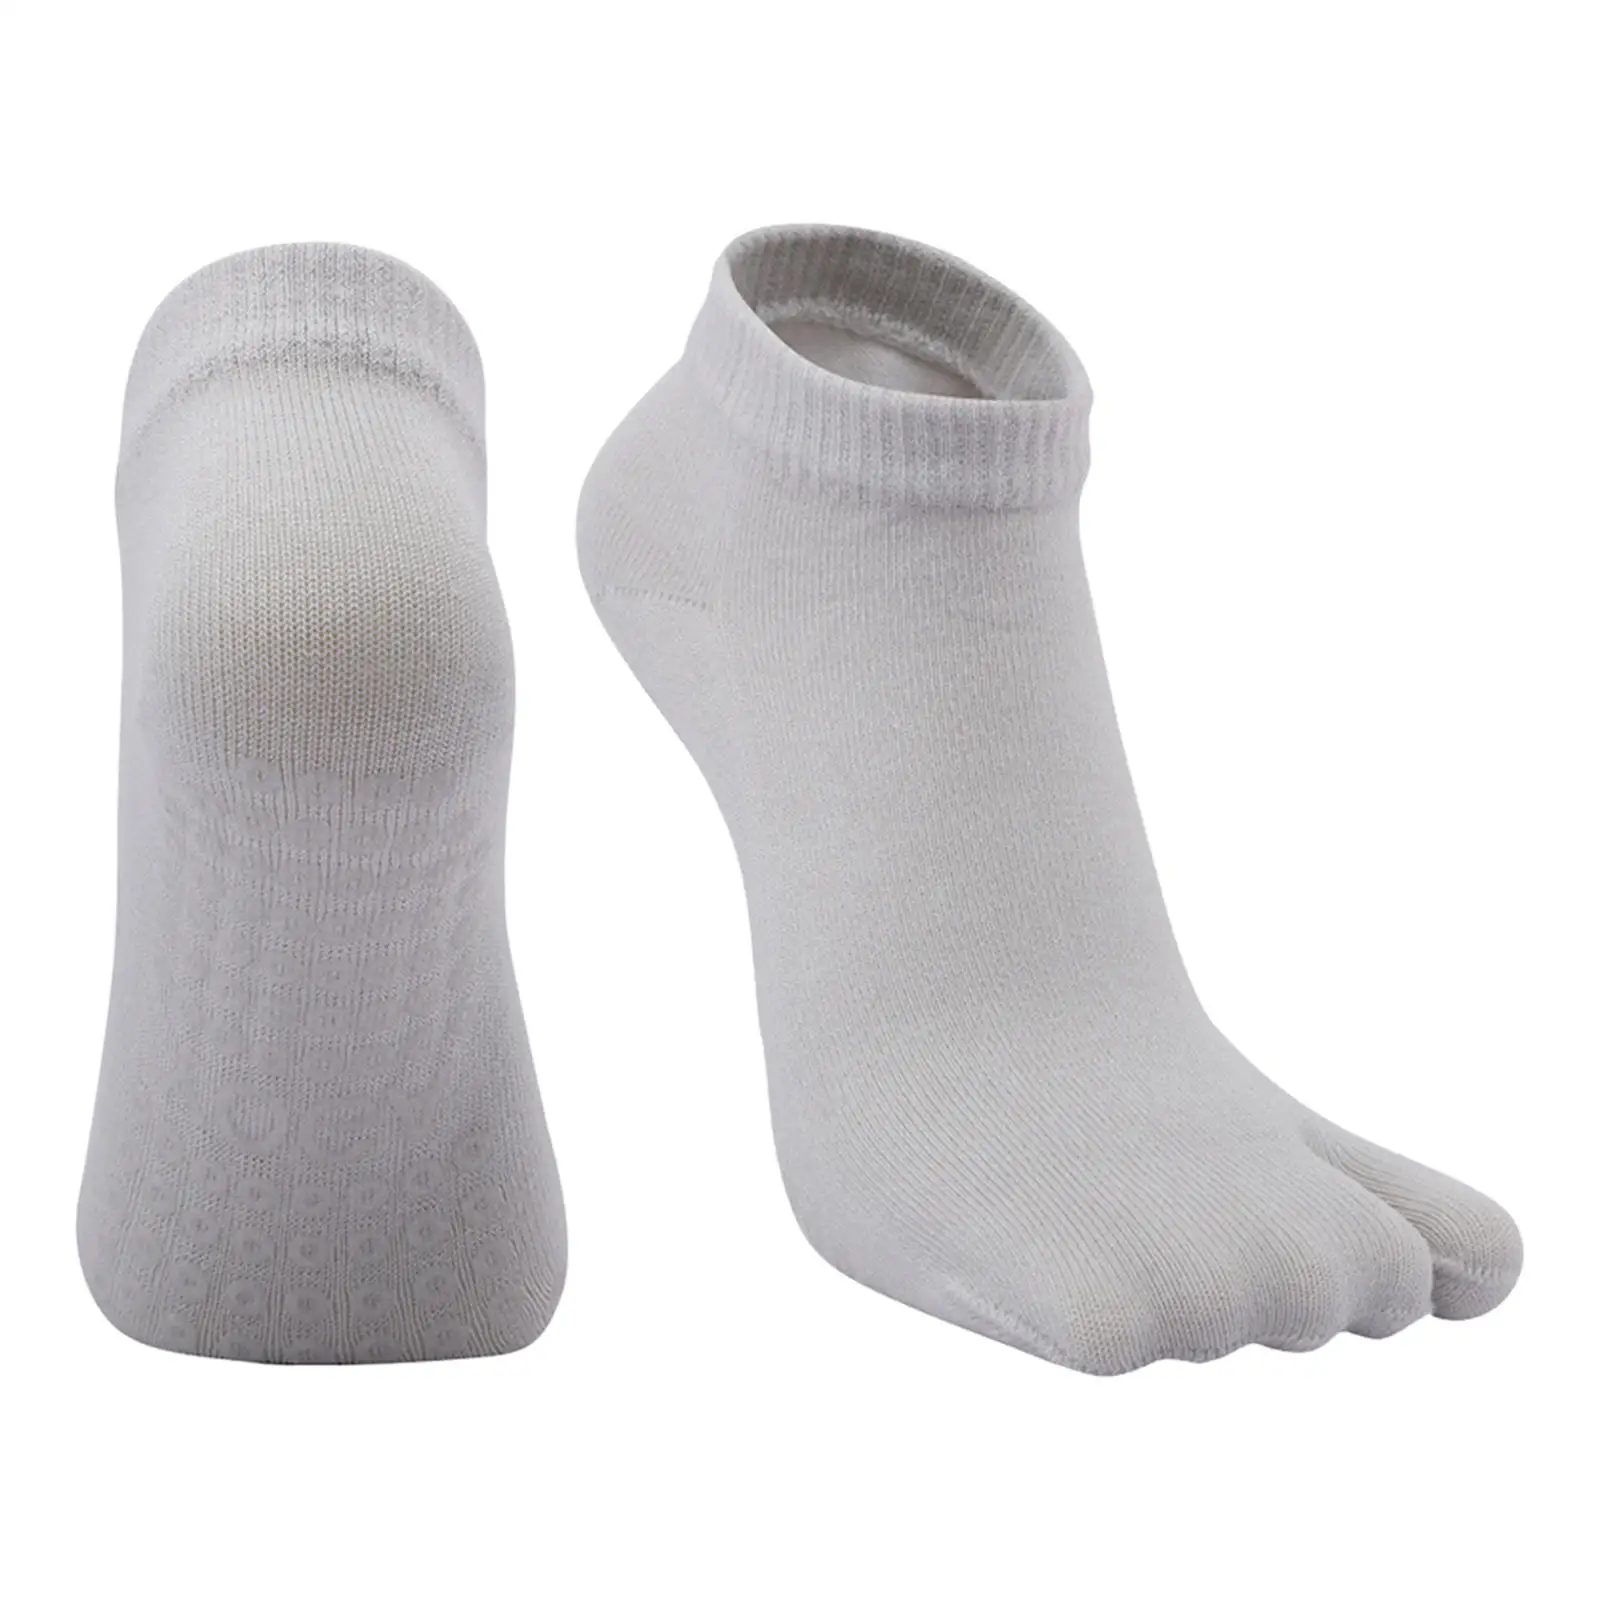 Japanese Style Flip Flop Socks Sandal Socks for Yoga Clog Socks